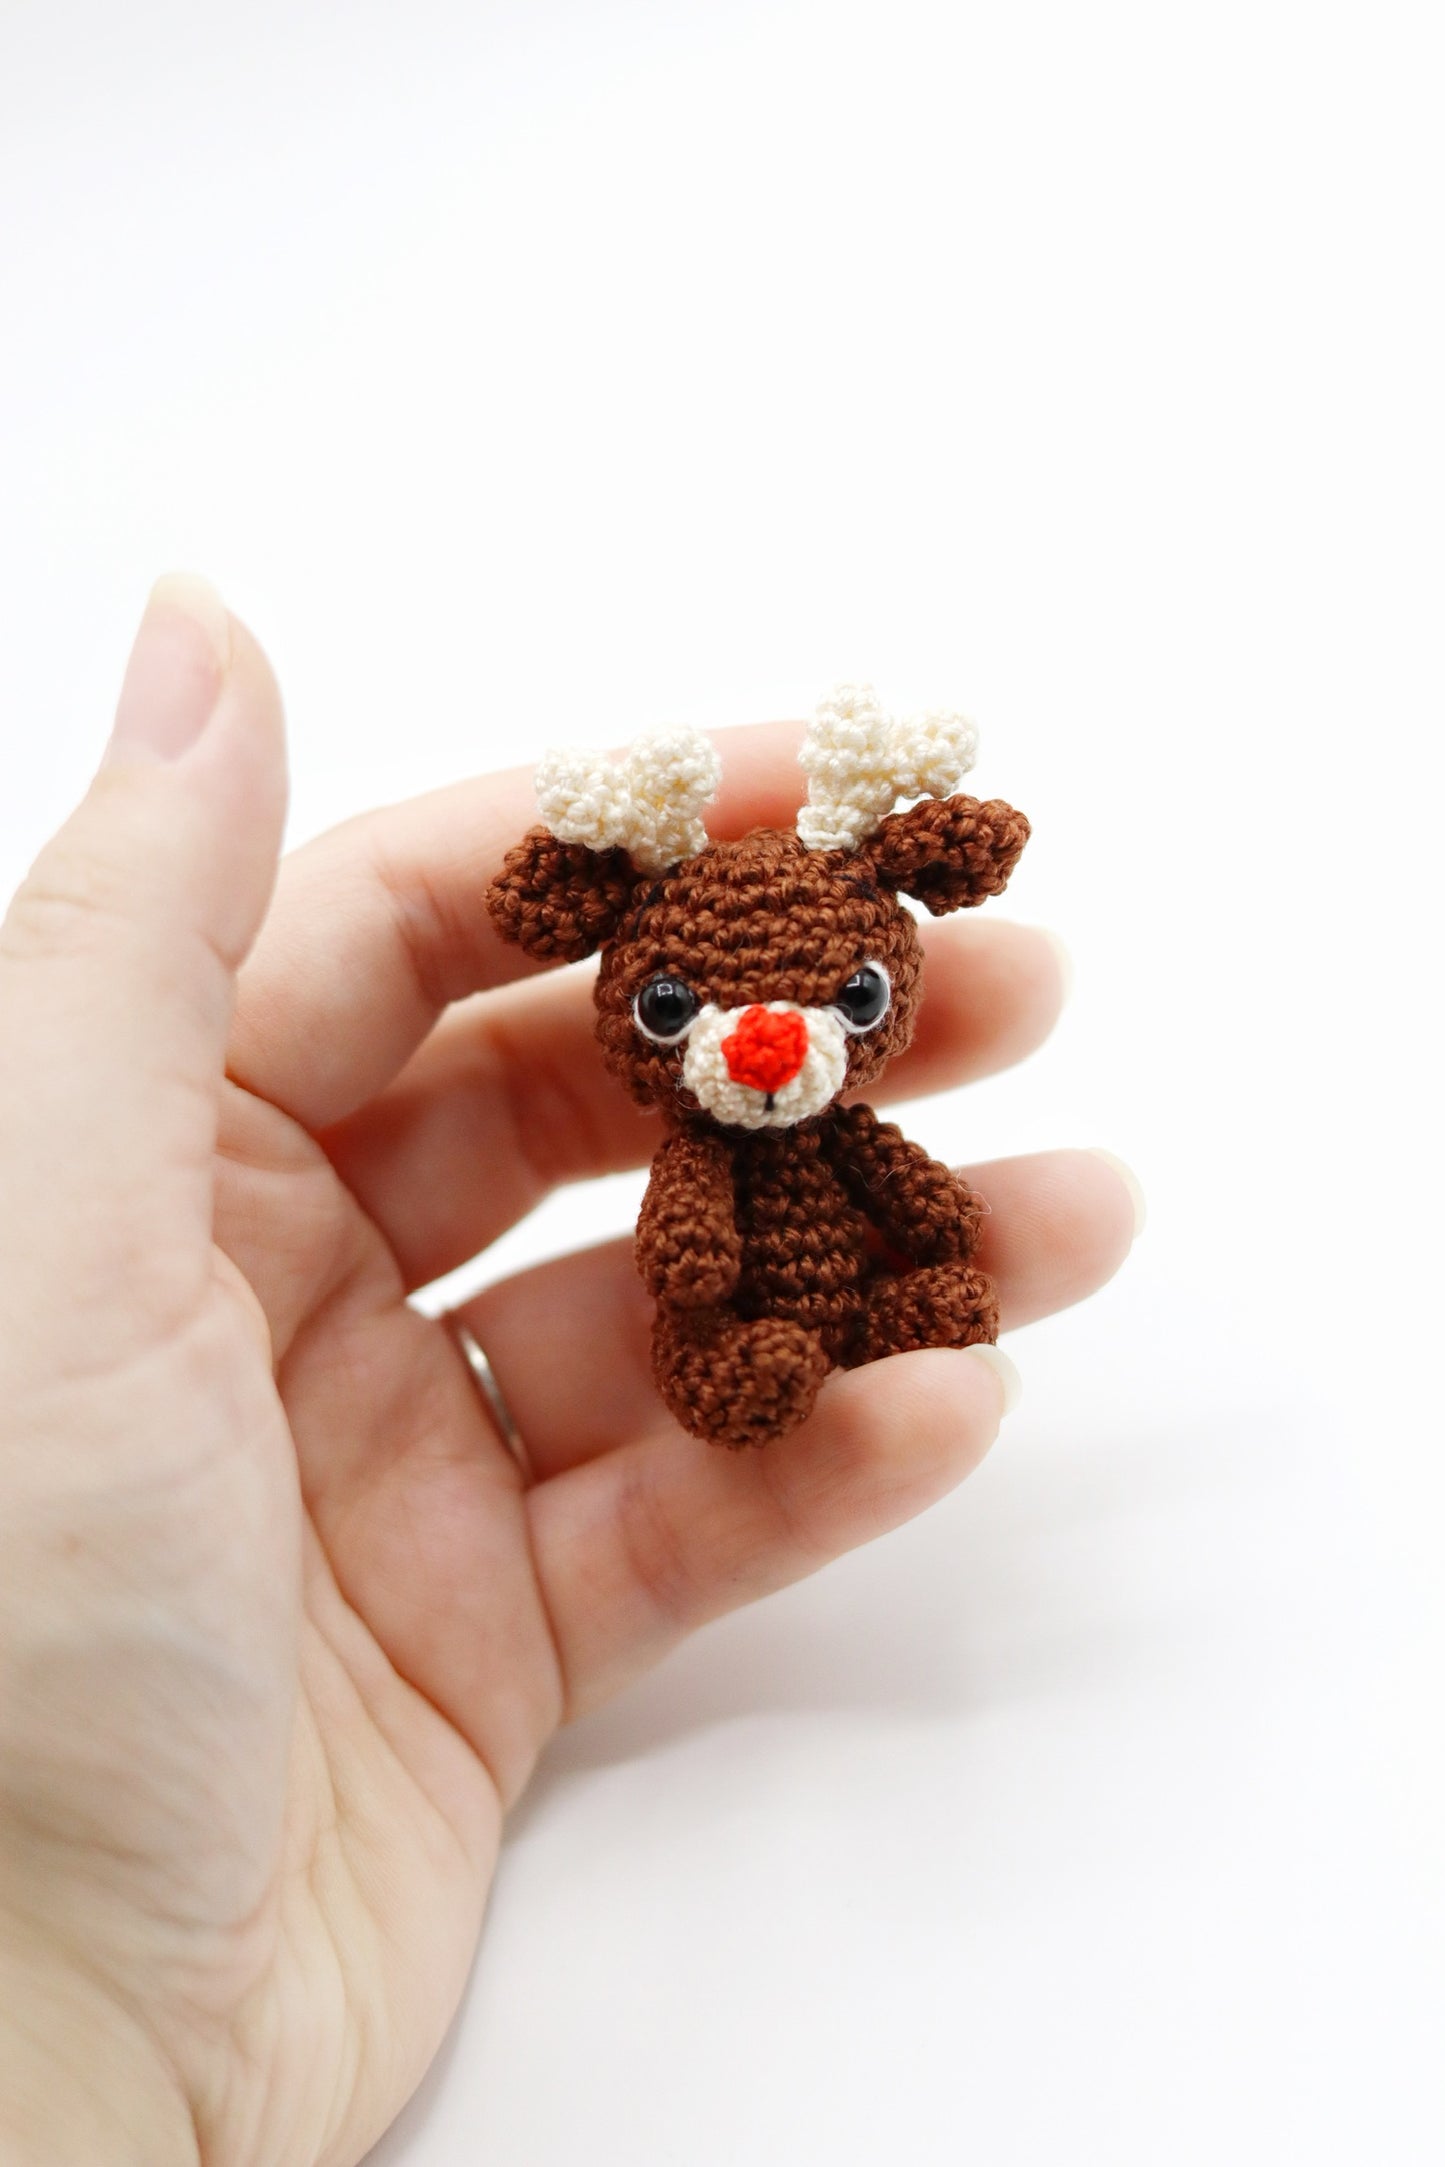 Handmade crochet tiny animal toys